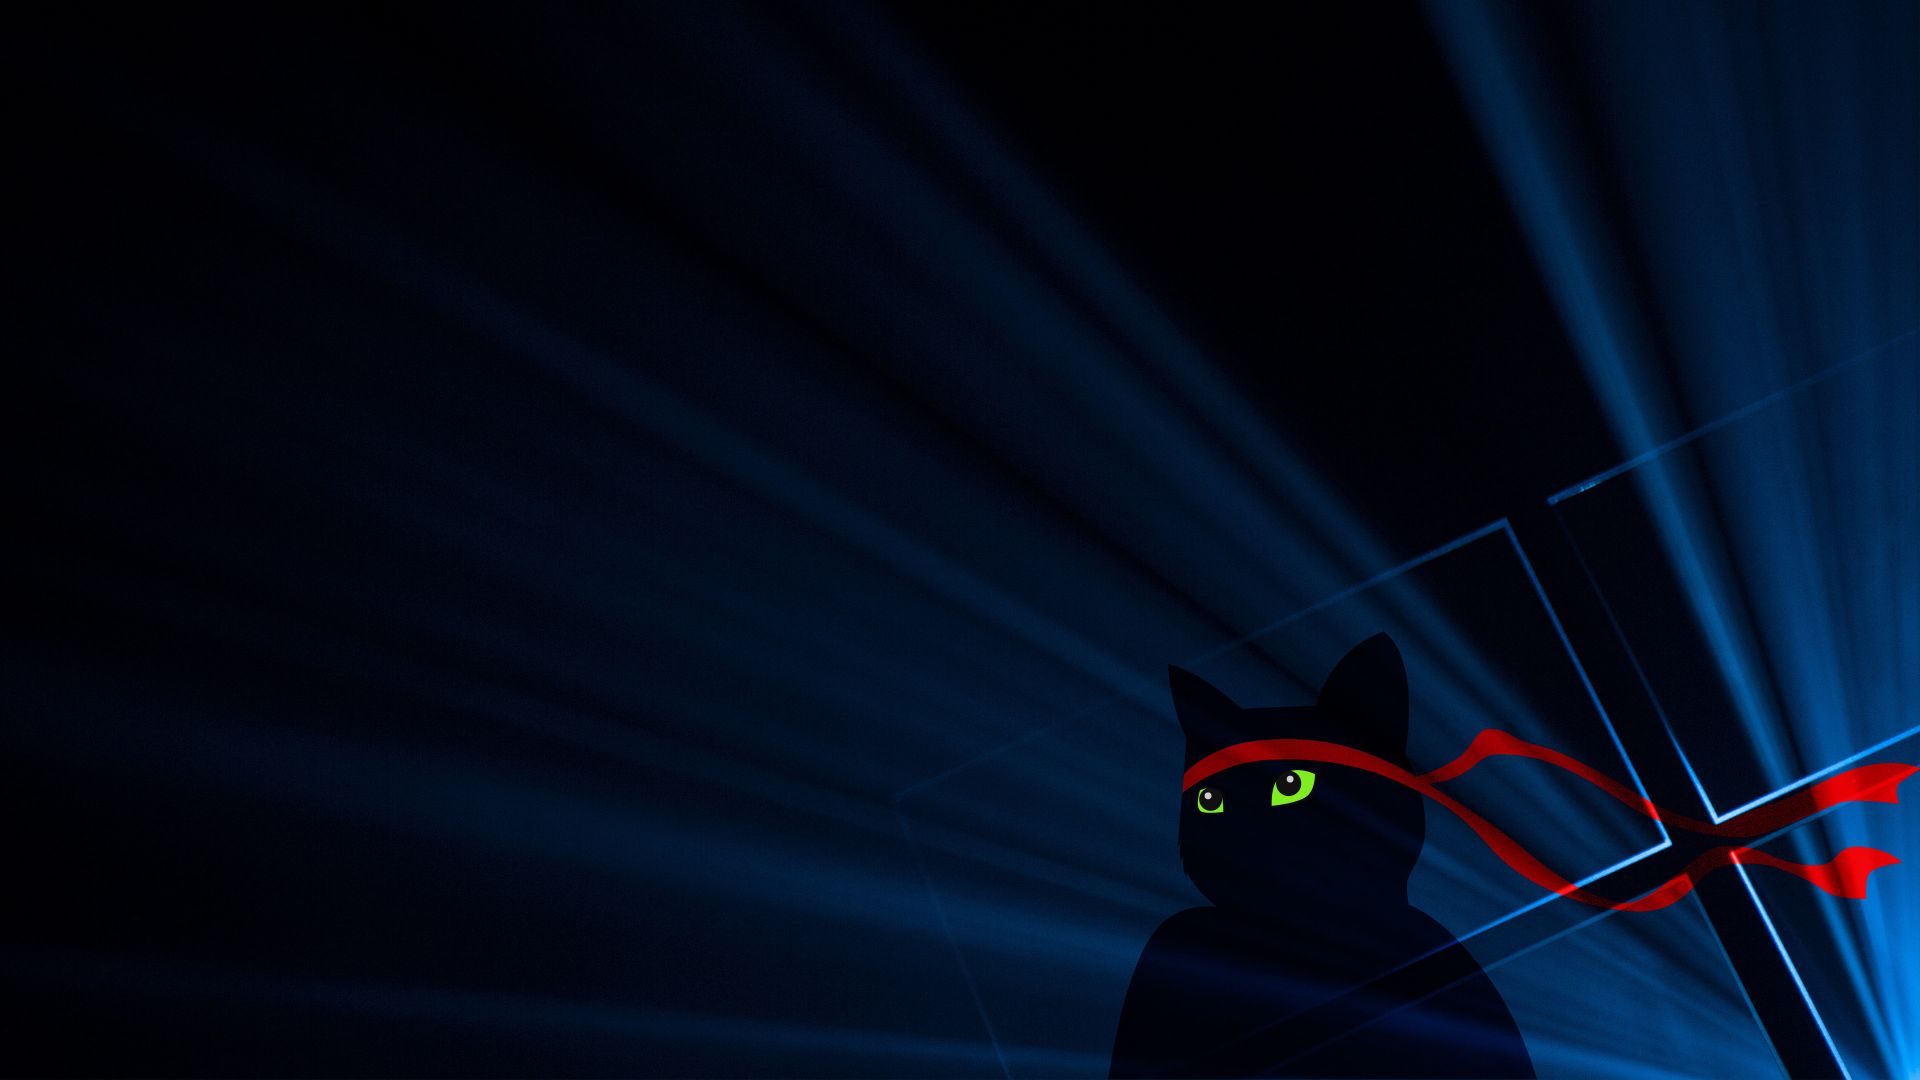 Desktop Wallpaper Ninja Cat, Dark, 4k, Hd Image, Picture, Background, 919c5c